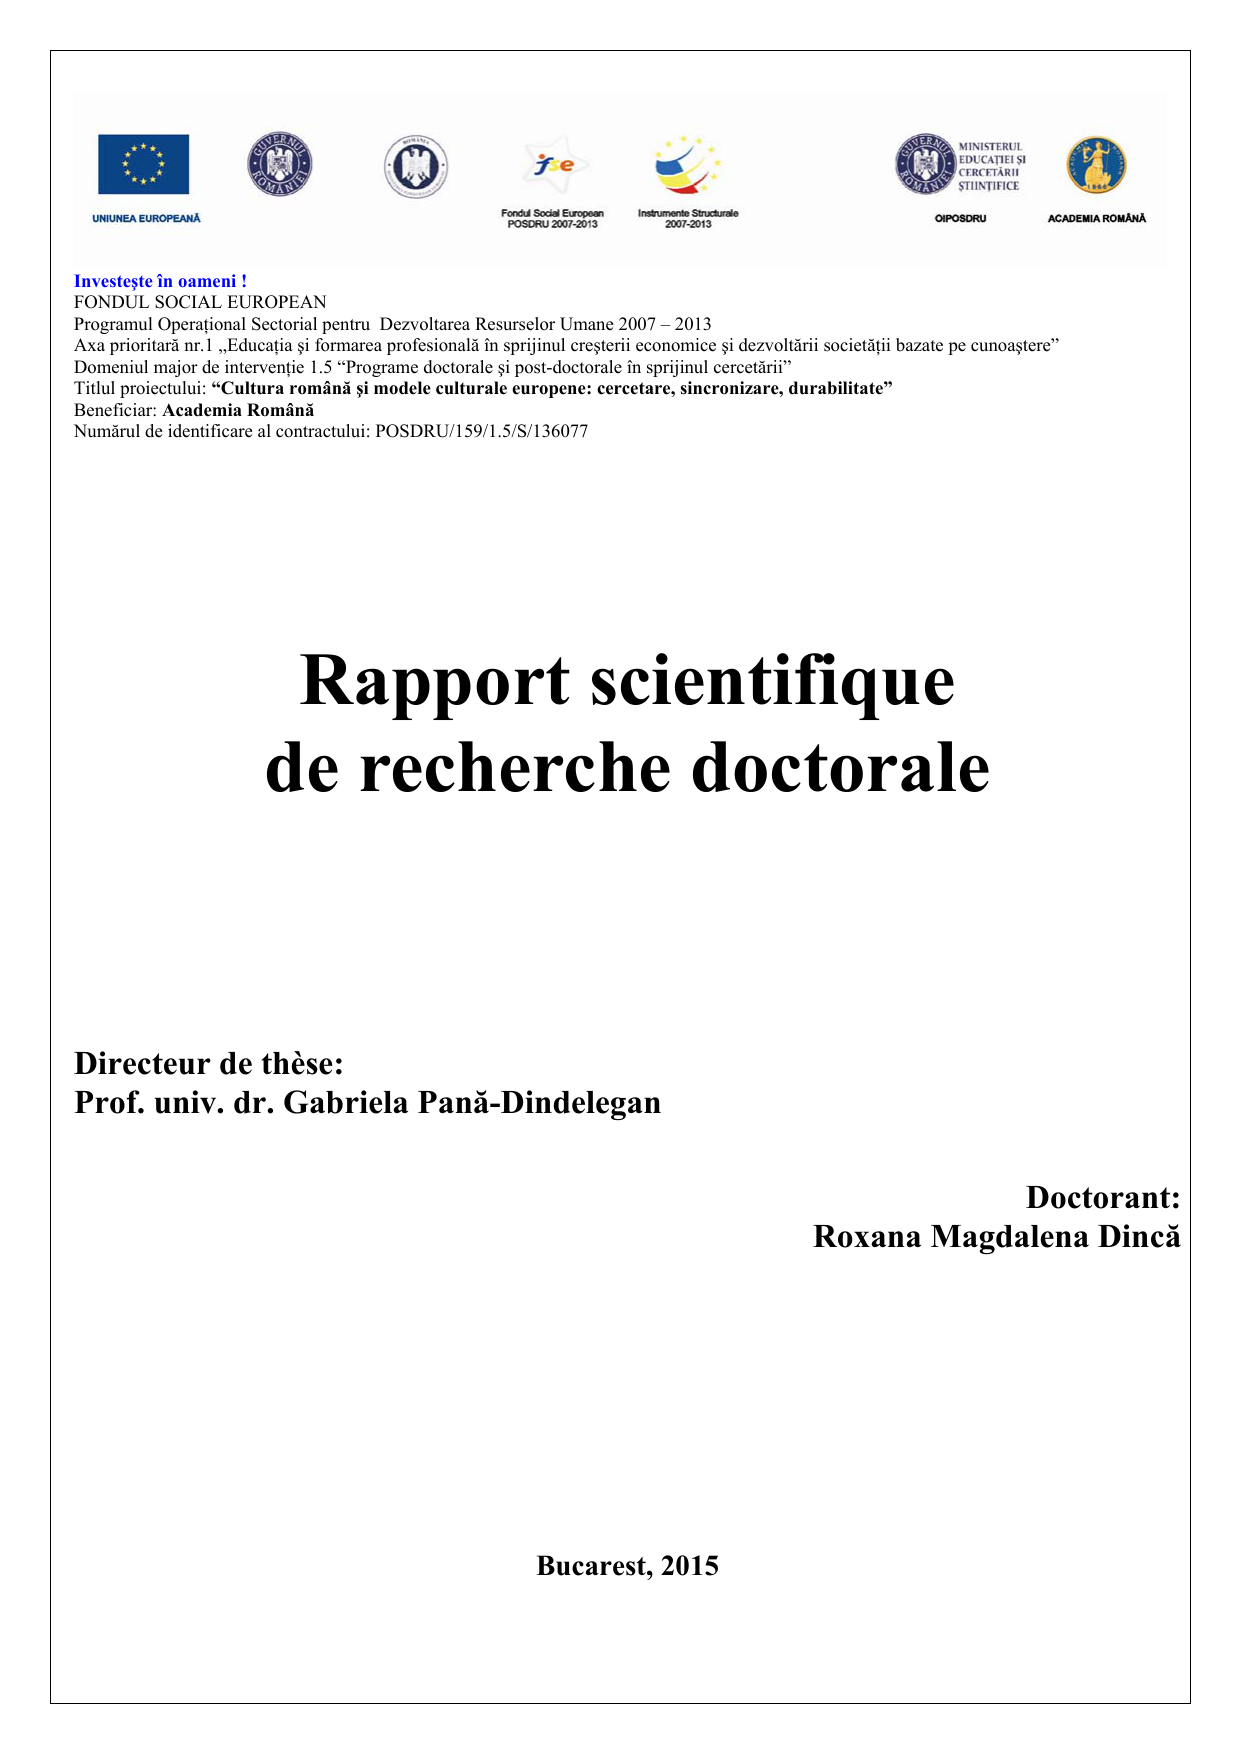 Rapport scientifique de recherche doctorale